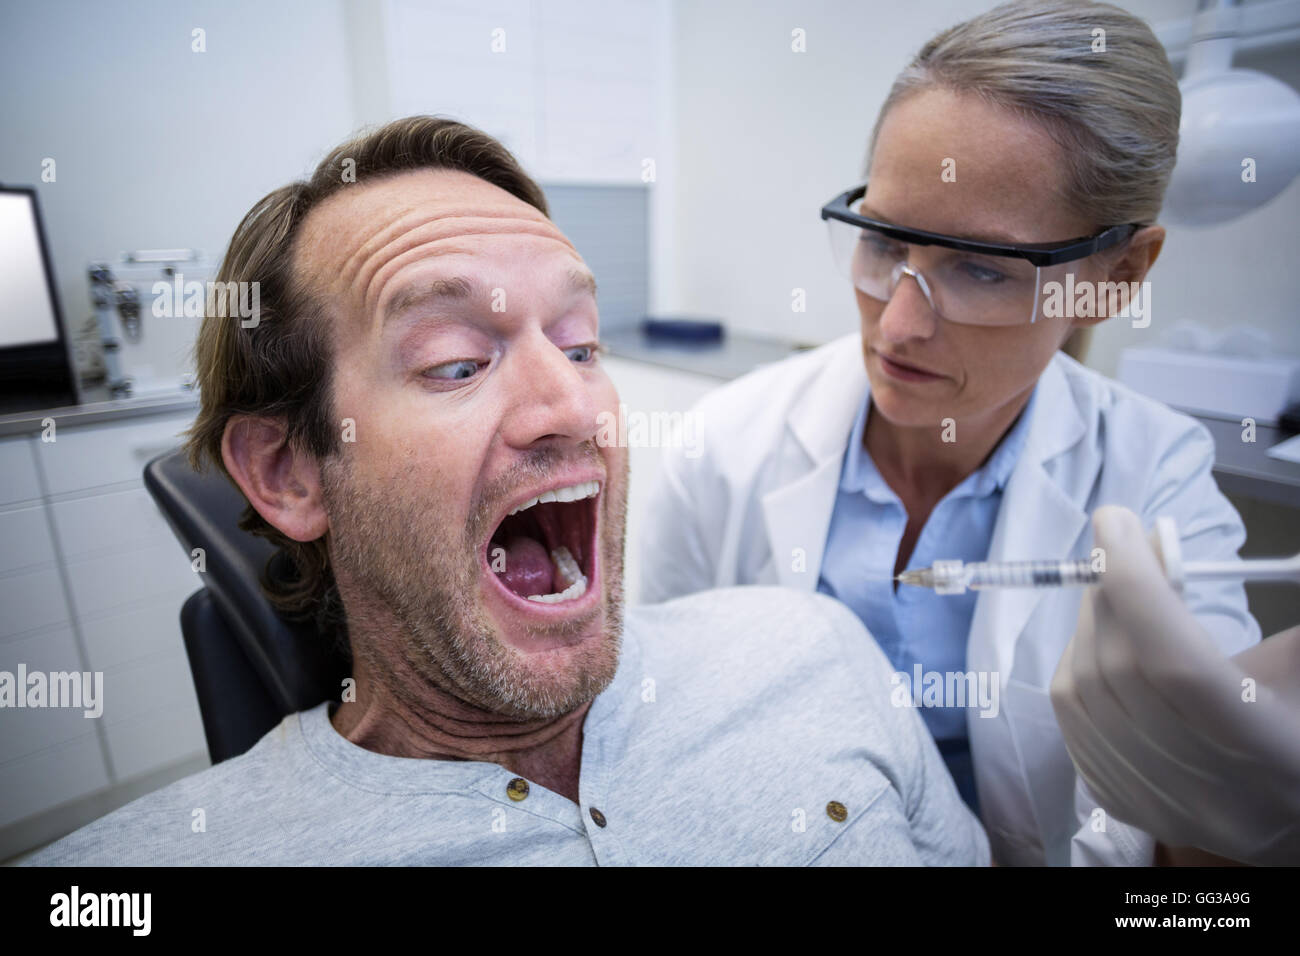 Male patient effrayé pendant un examen dentaire Banque D'Images